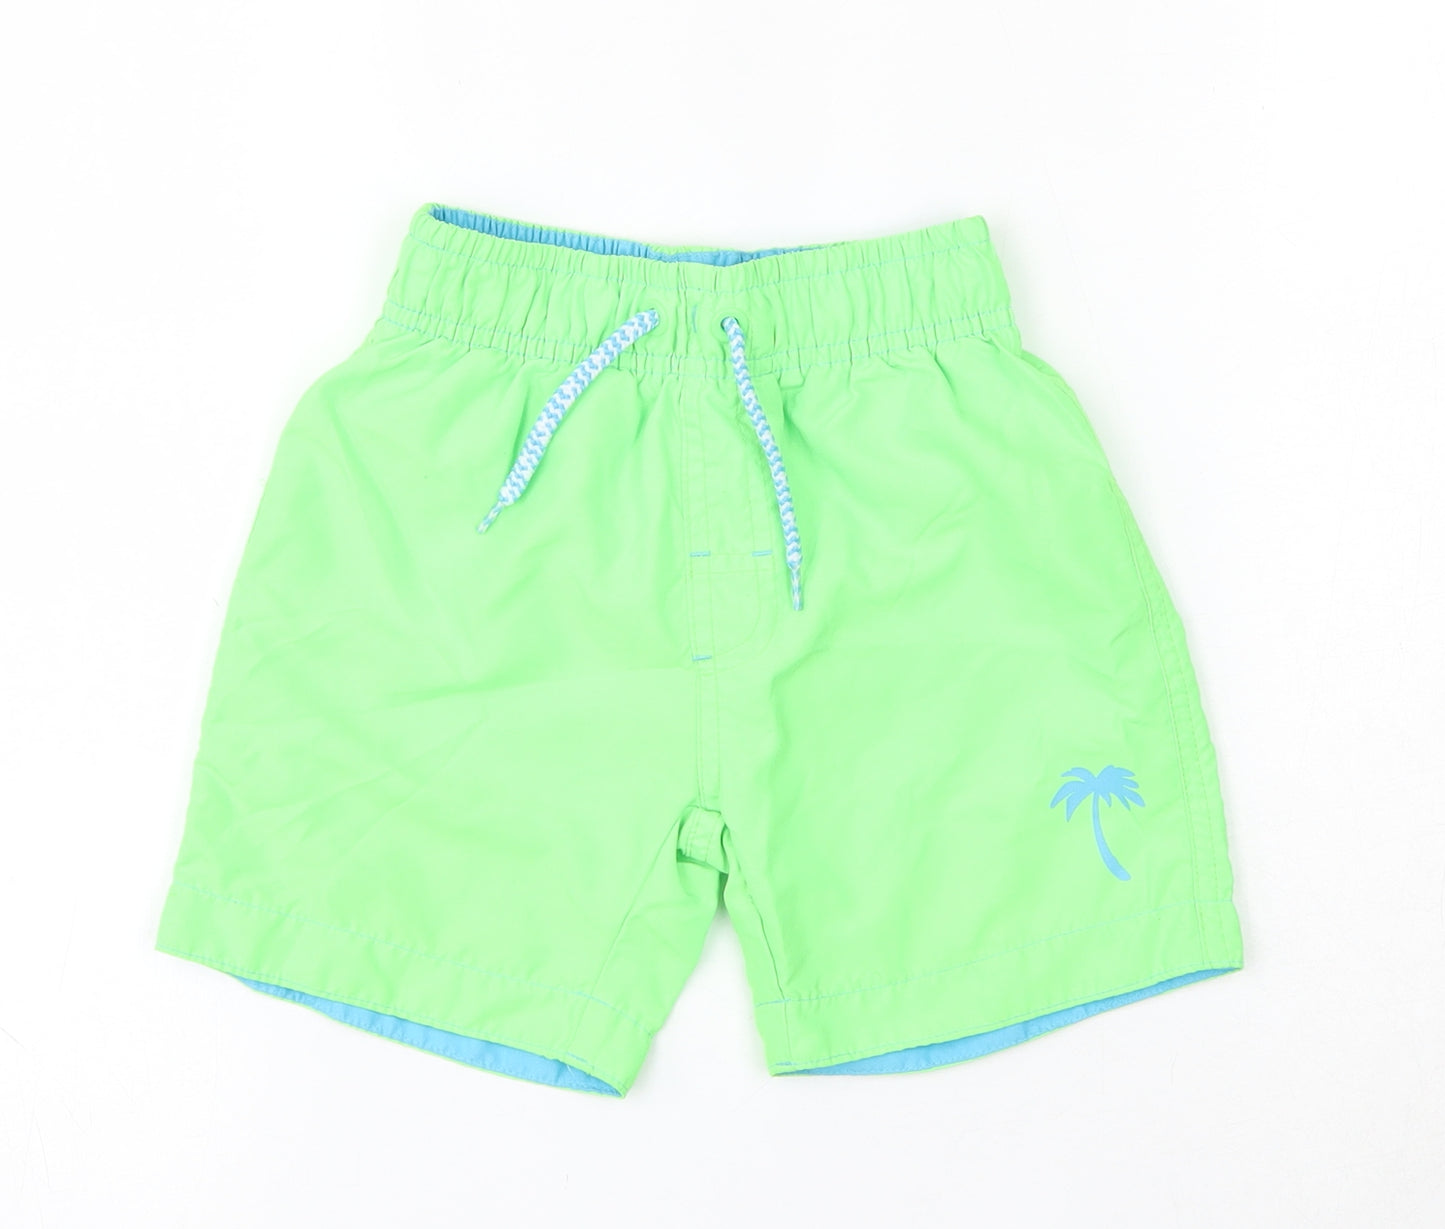 Primark Boys Green  100% Polyester Sweat Shorts Size 3-4 Years  Regular Drawstring